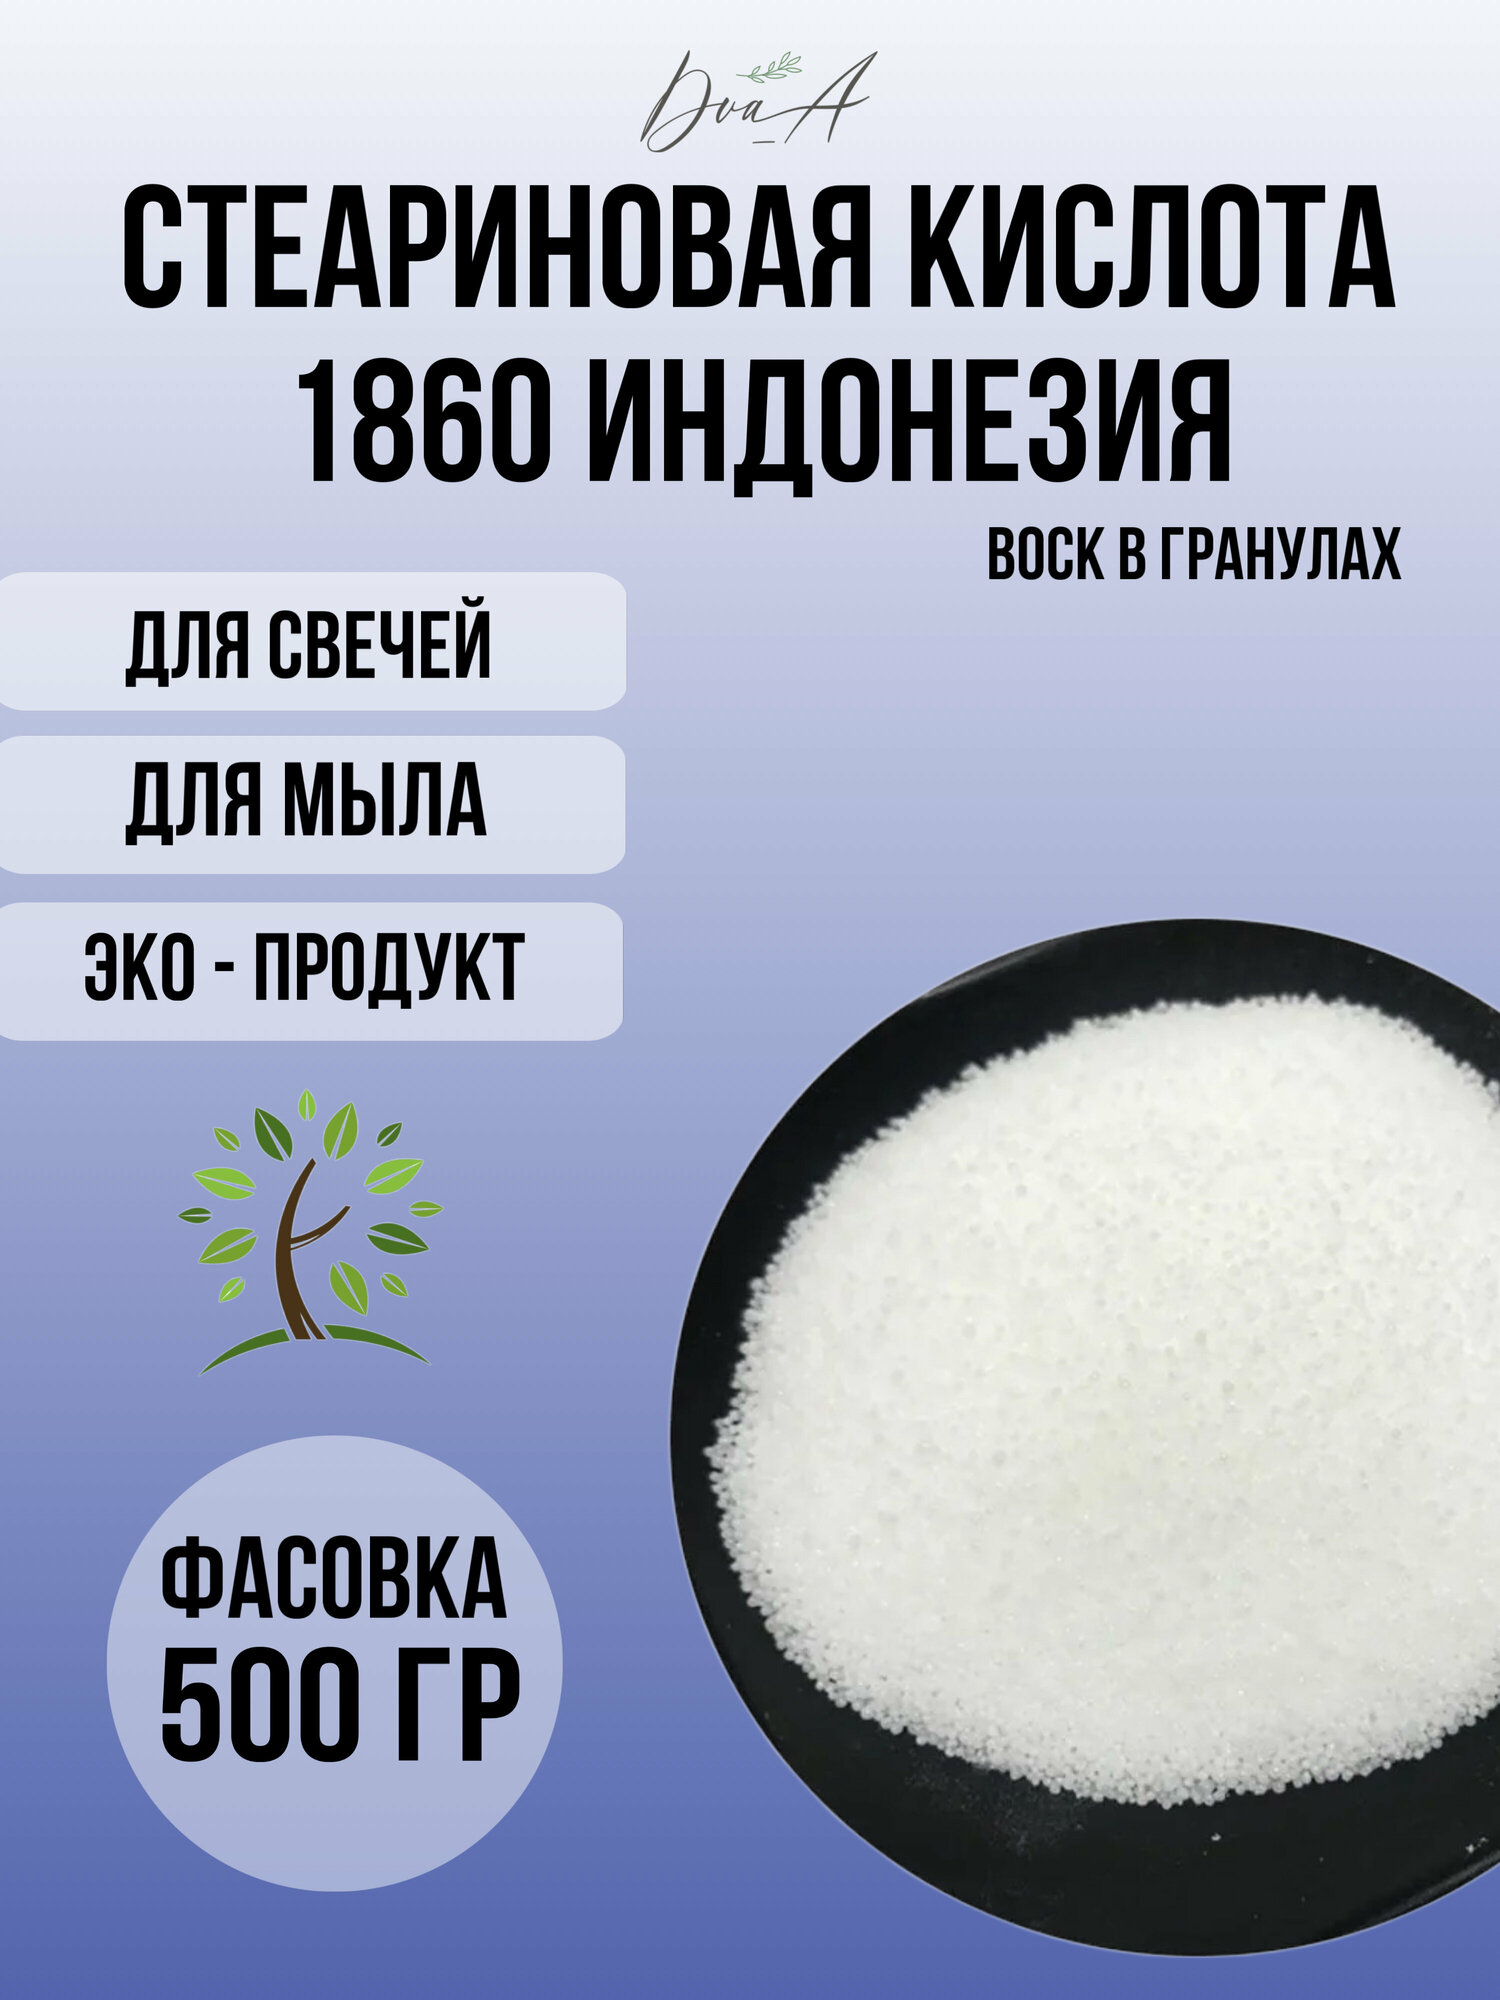 Стеариновая кислота 1860 500 грамм